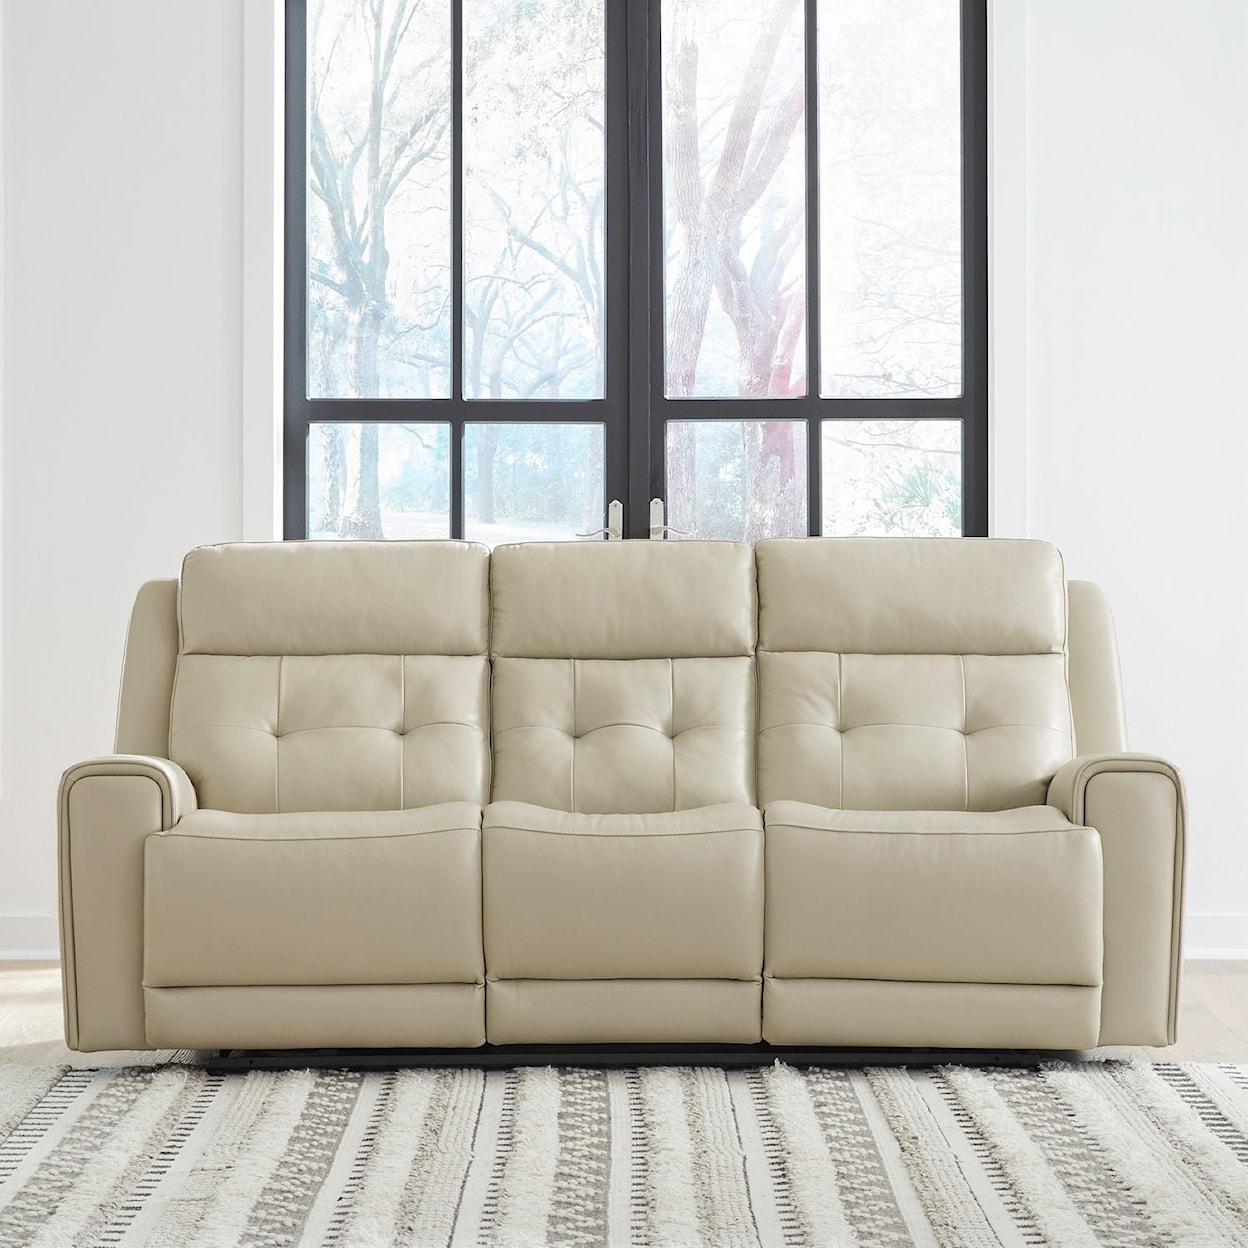 Liberty Furniture Carrington Power Reclining Sofa